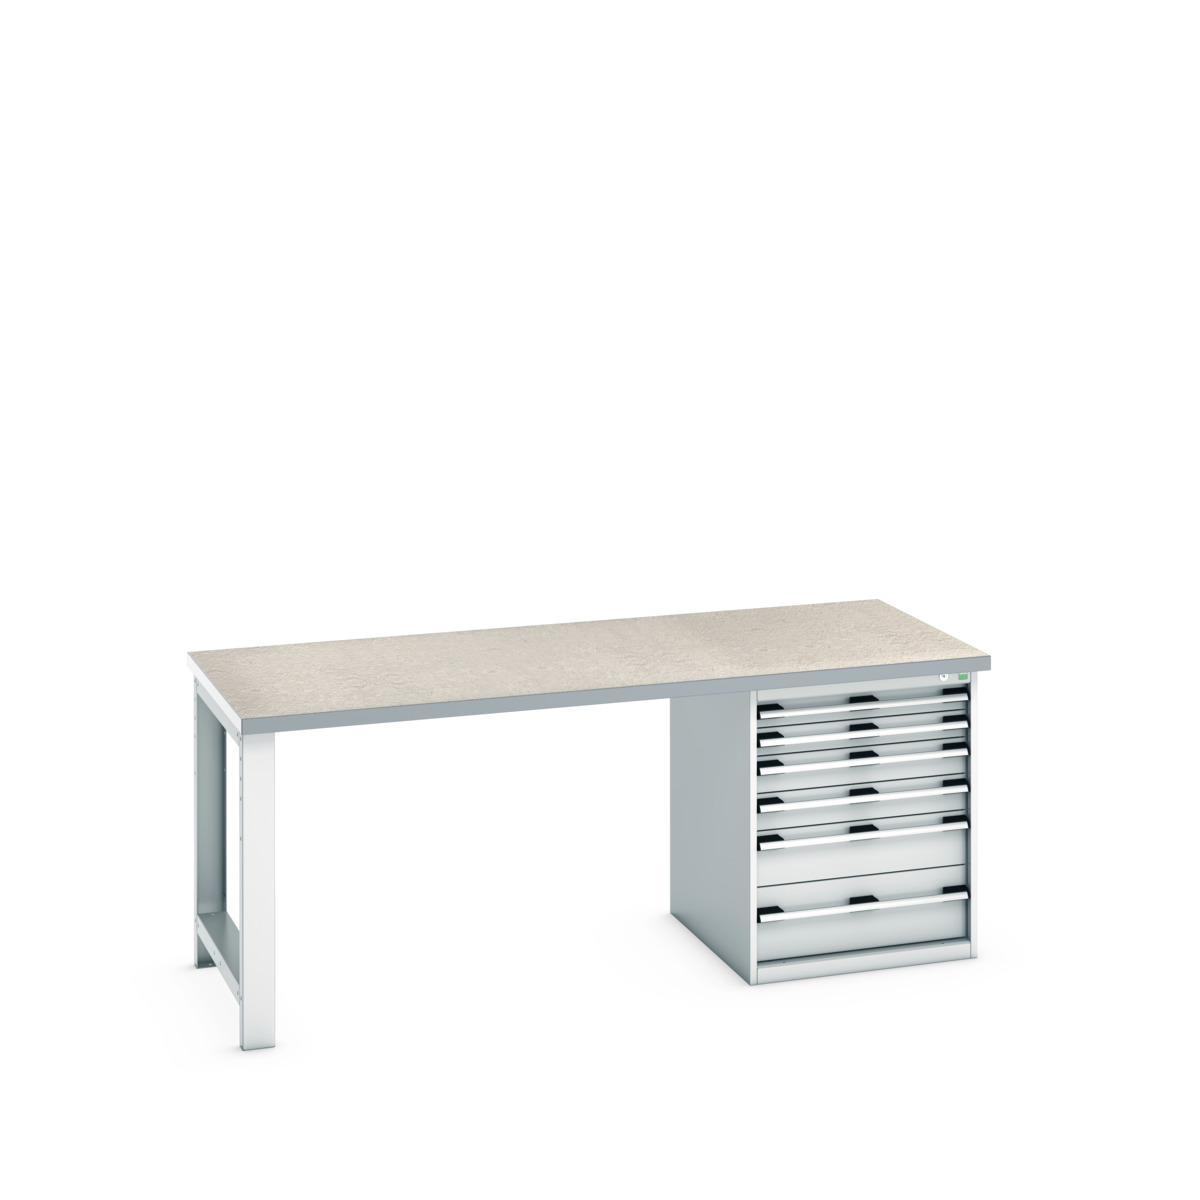 41004116.16V - cubio pedestal bench (lino)